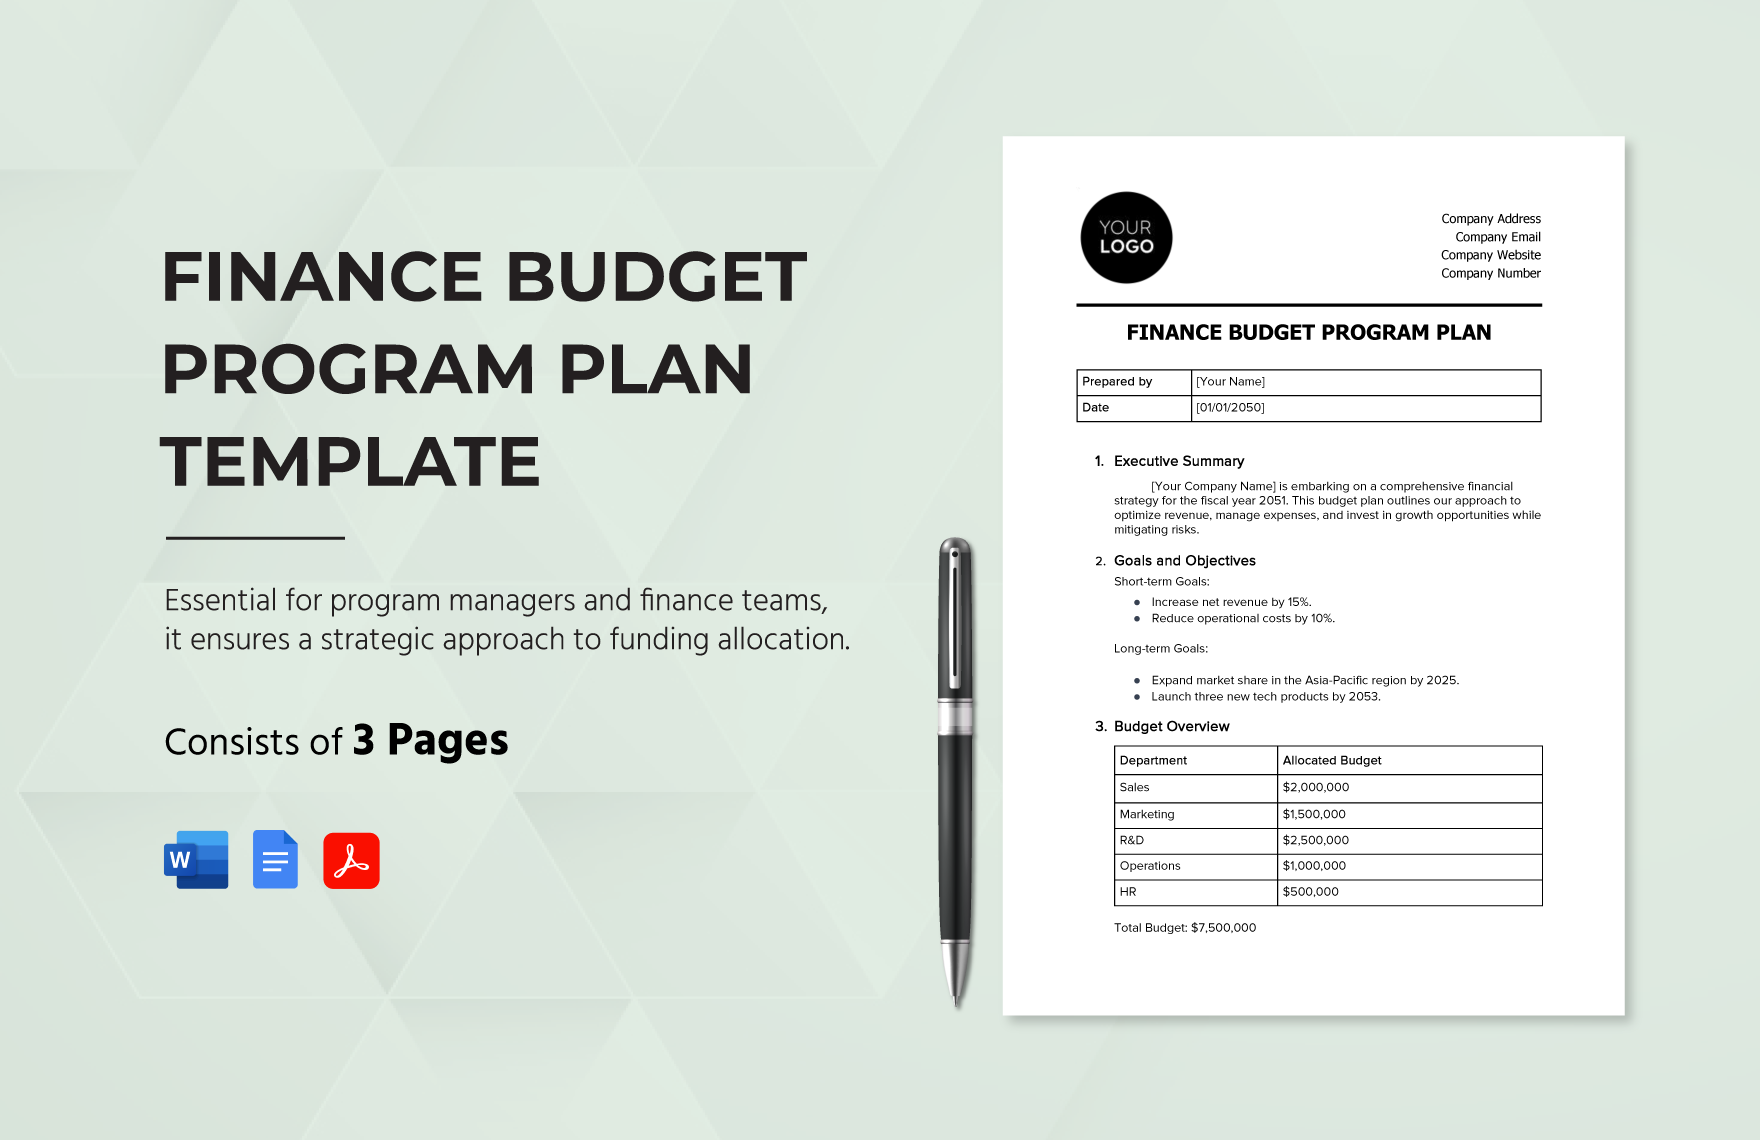 Finance Budget Program Plan Template